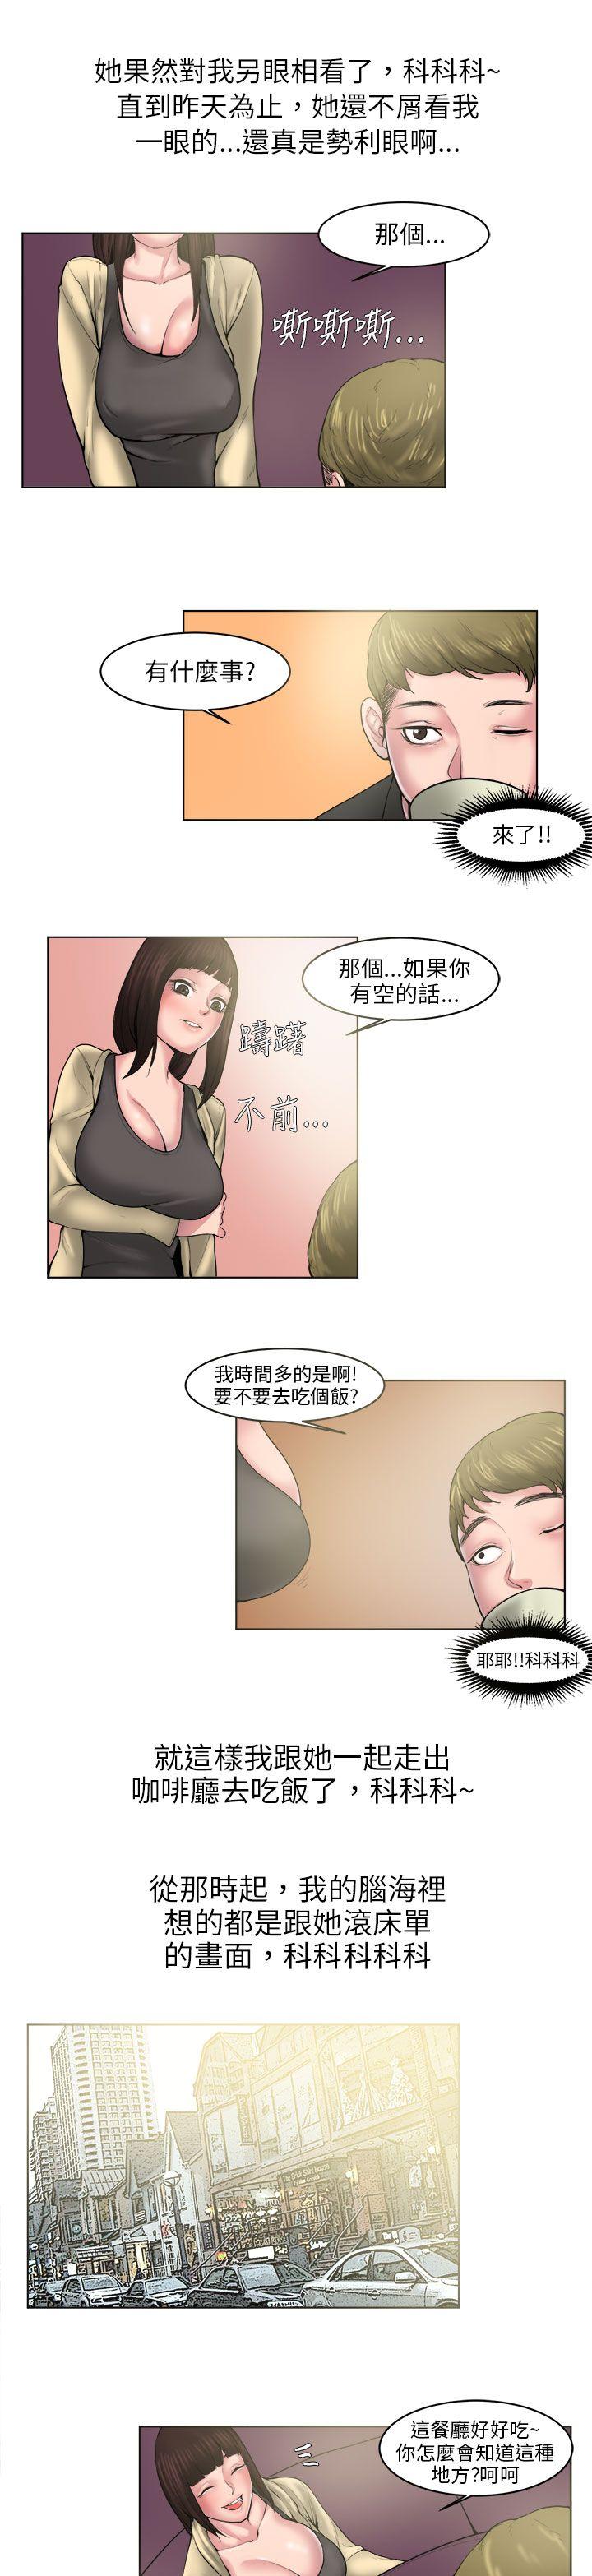 韩国污漫画 秘密Story 咖啡厅里遇到的巨乳女孩(下) 5